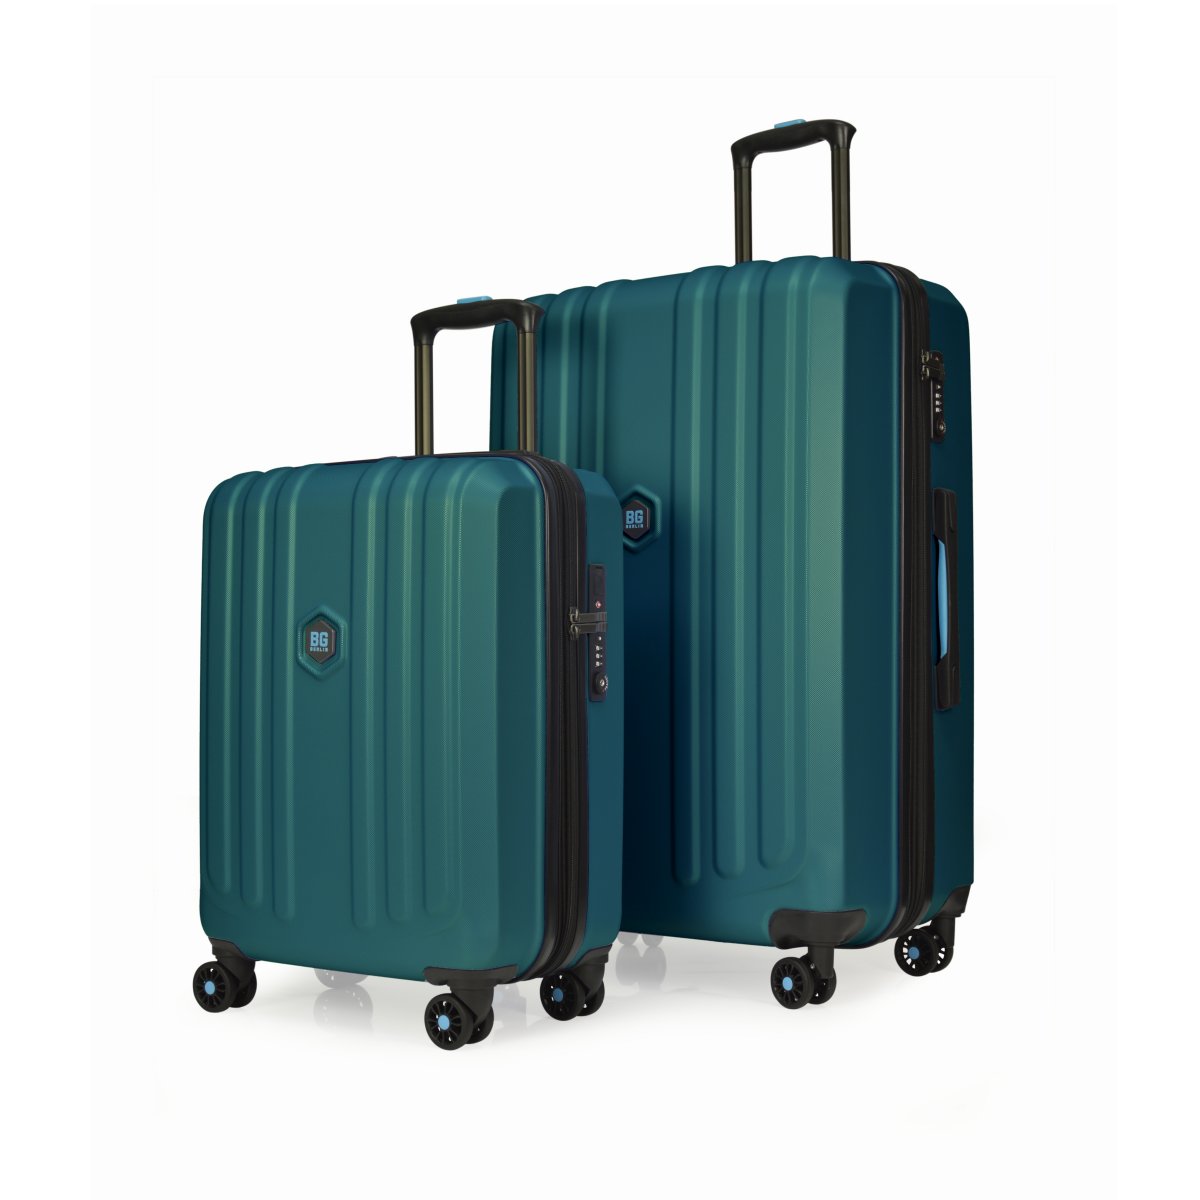 Enduro Luggage - 2er Kofferset Forest - Buy one get one free von BG Berlin